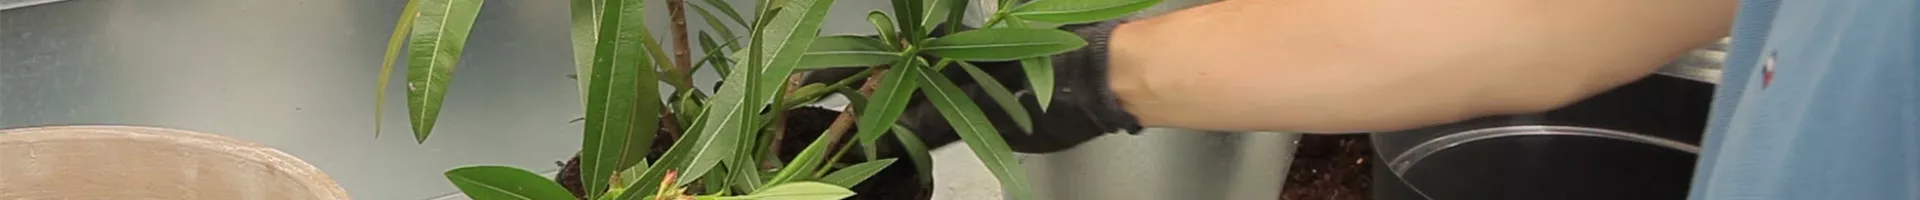 Oleander - Einpflanzen in ein Gefäß (thumbnail).jpg